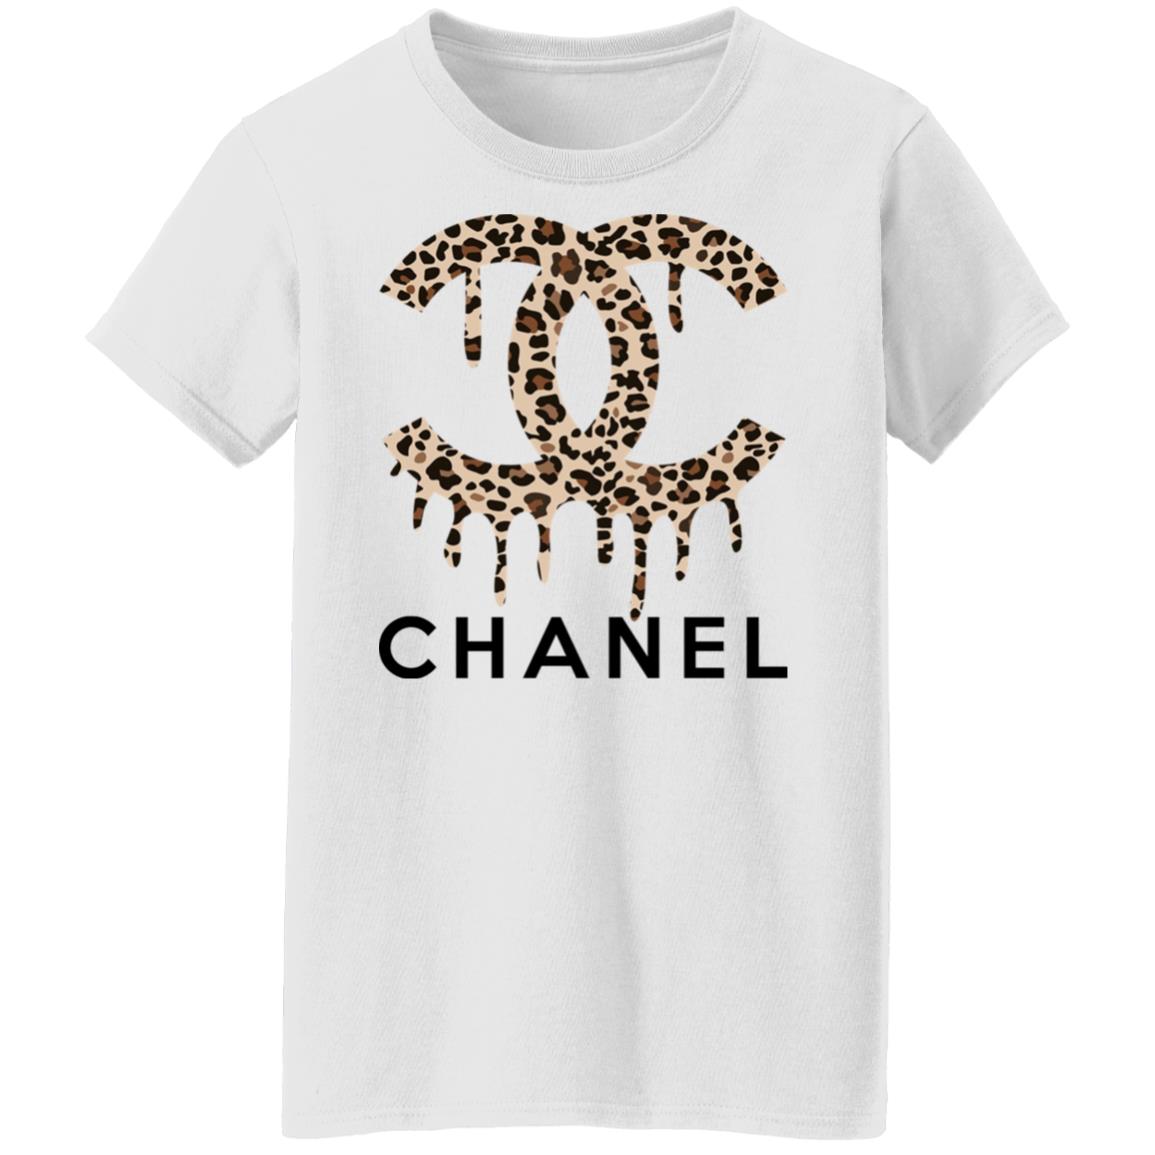 Chanel Shirt Mens Classic TShirt by Daniel Janda  Curioos